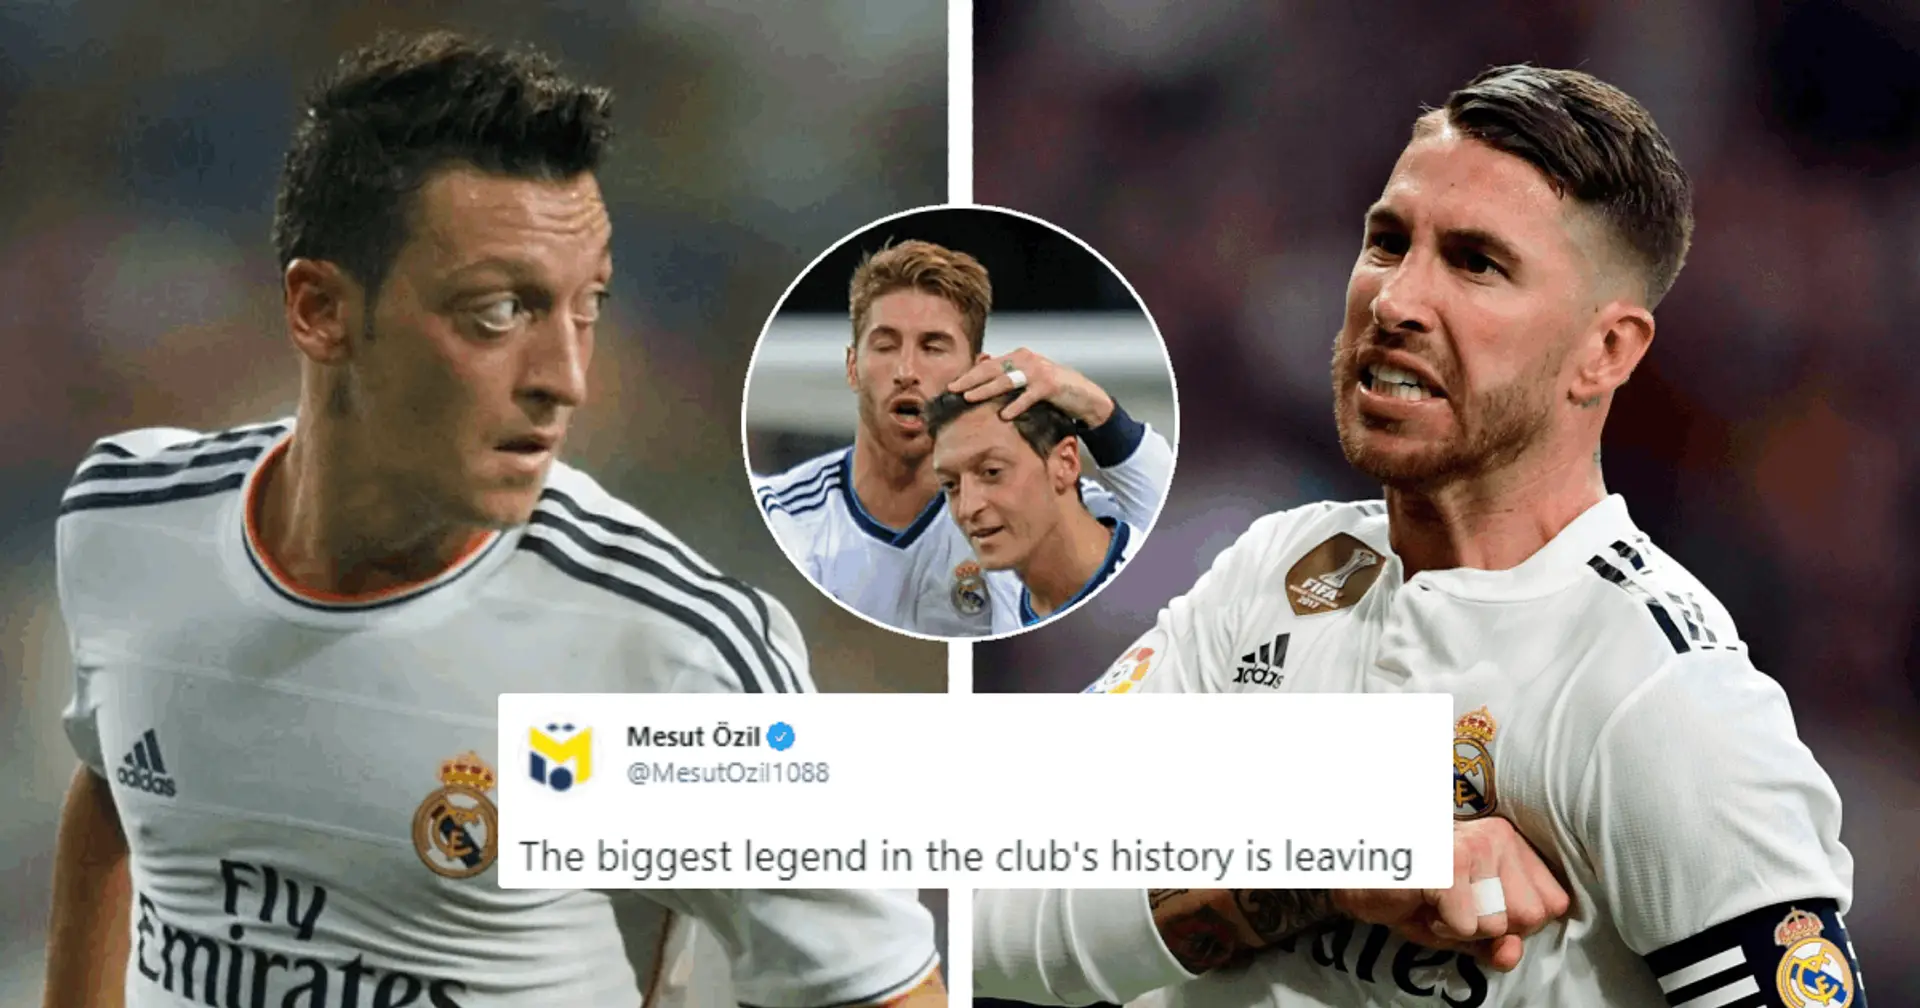 "La plus grande légende de l'histoire du club": Mesut Ozil rend hommage à Sergio Ramos